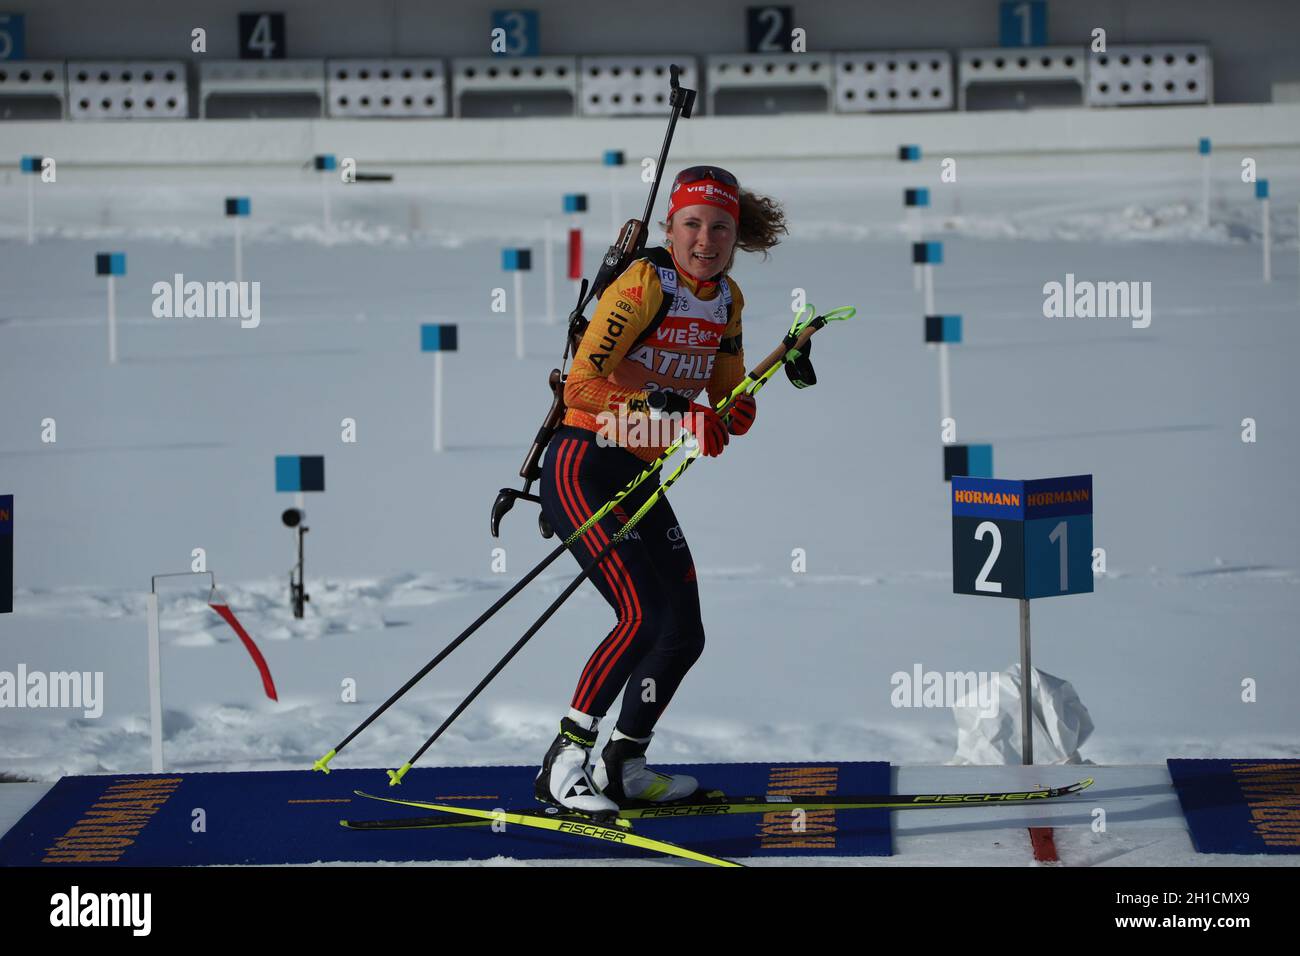 Gut gelaunt am Schießstand: Janina Hettich (SC Schönwald) beim Training während der IBU Biathlon-Weltmeisterschaft Antholz 2020 Stock Photo